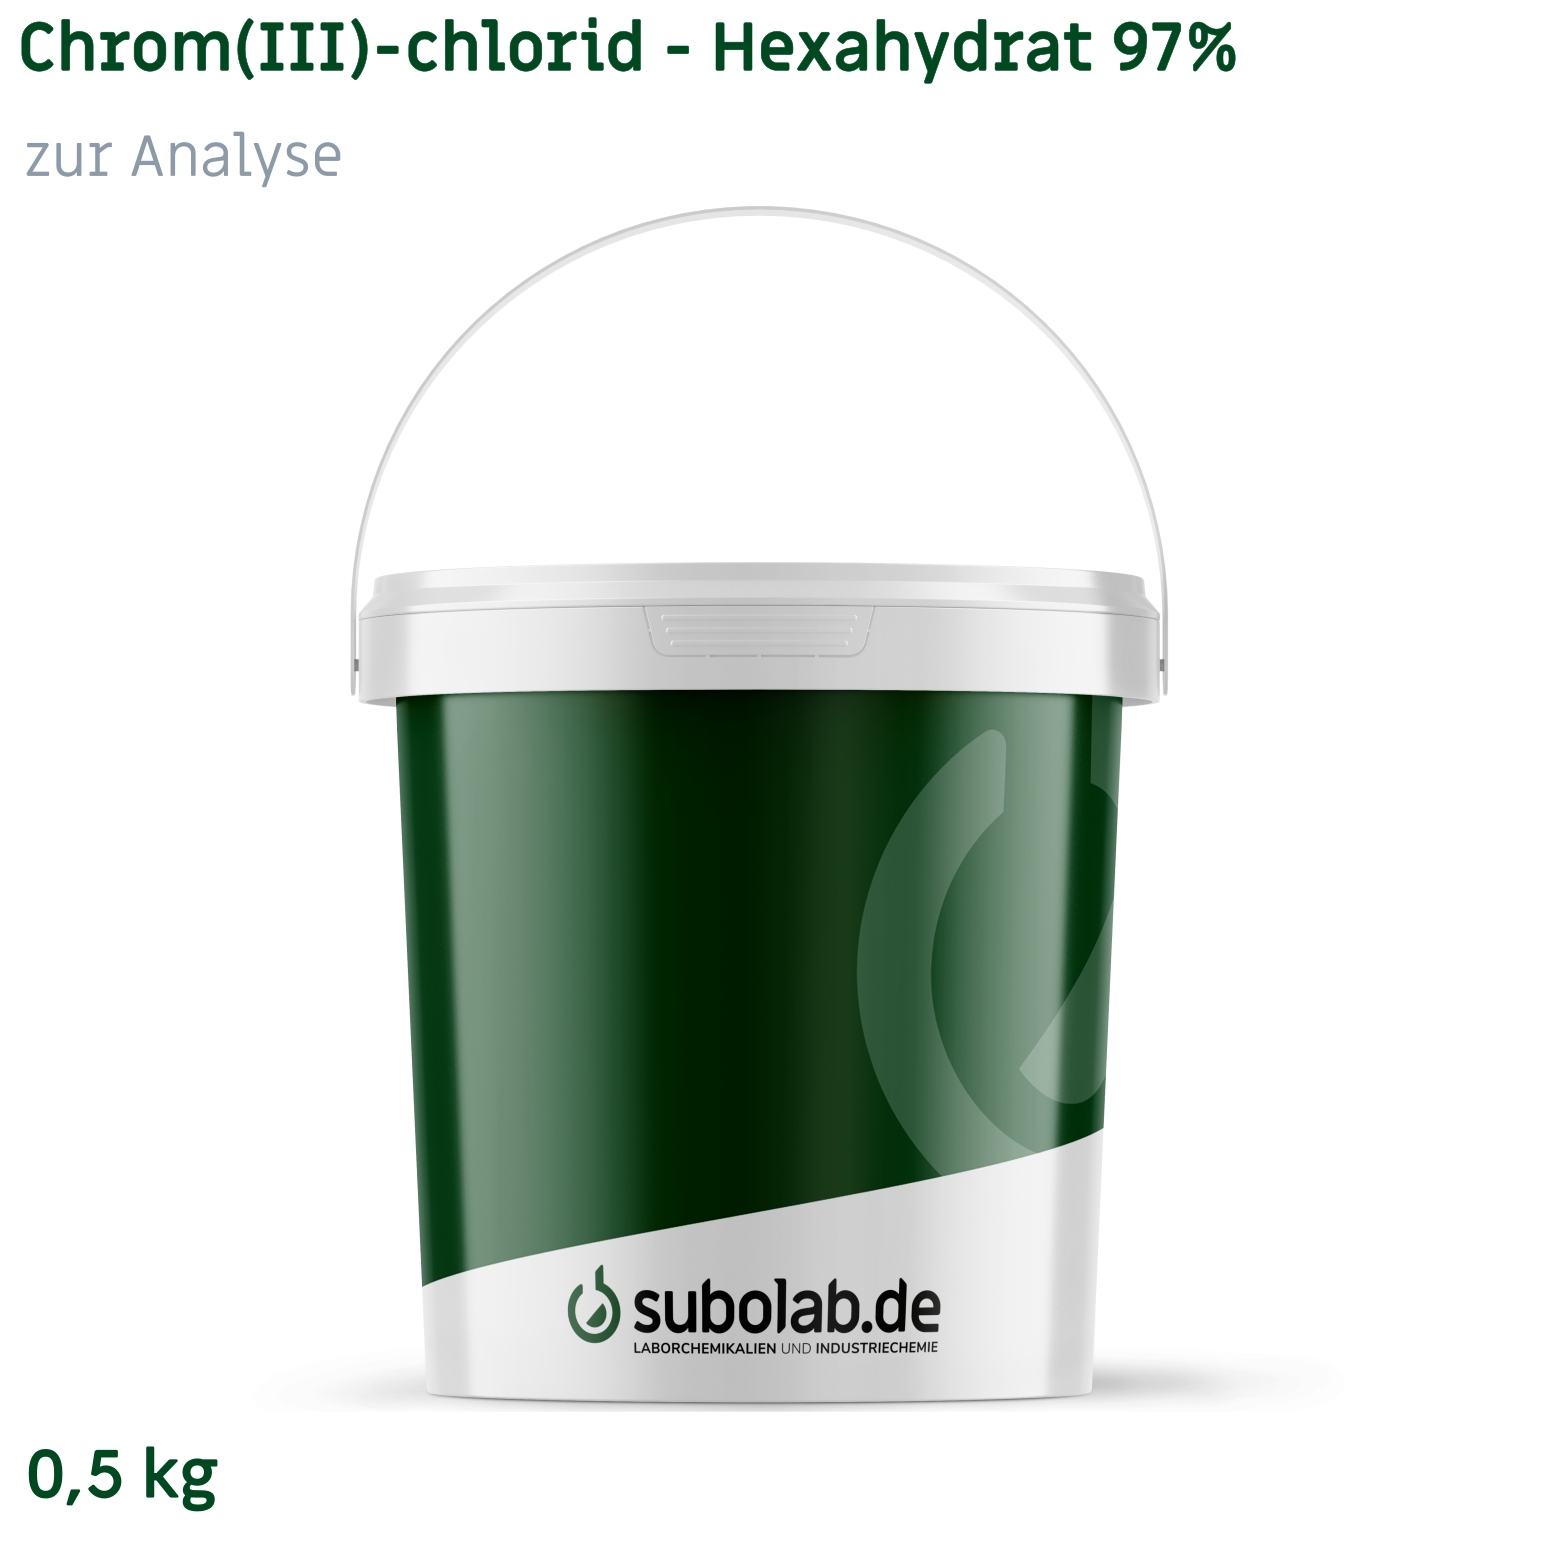 Bild von Chrom(III)-chlorid - Hexahydrat 97% zur Analyse (0,5 kg)